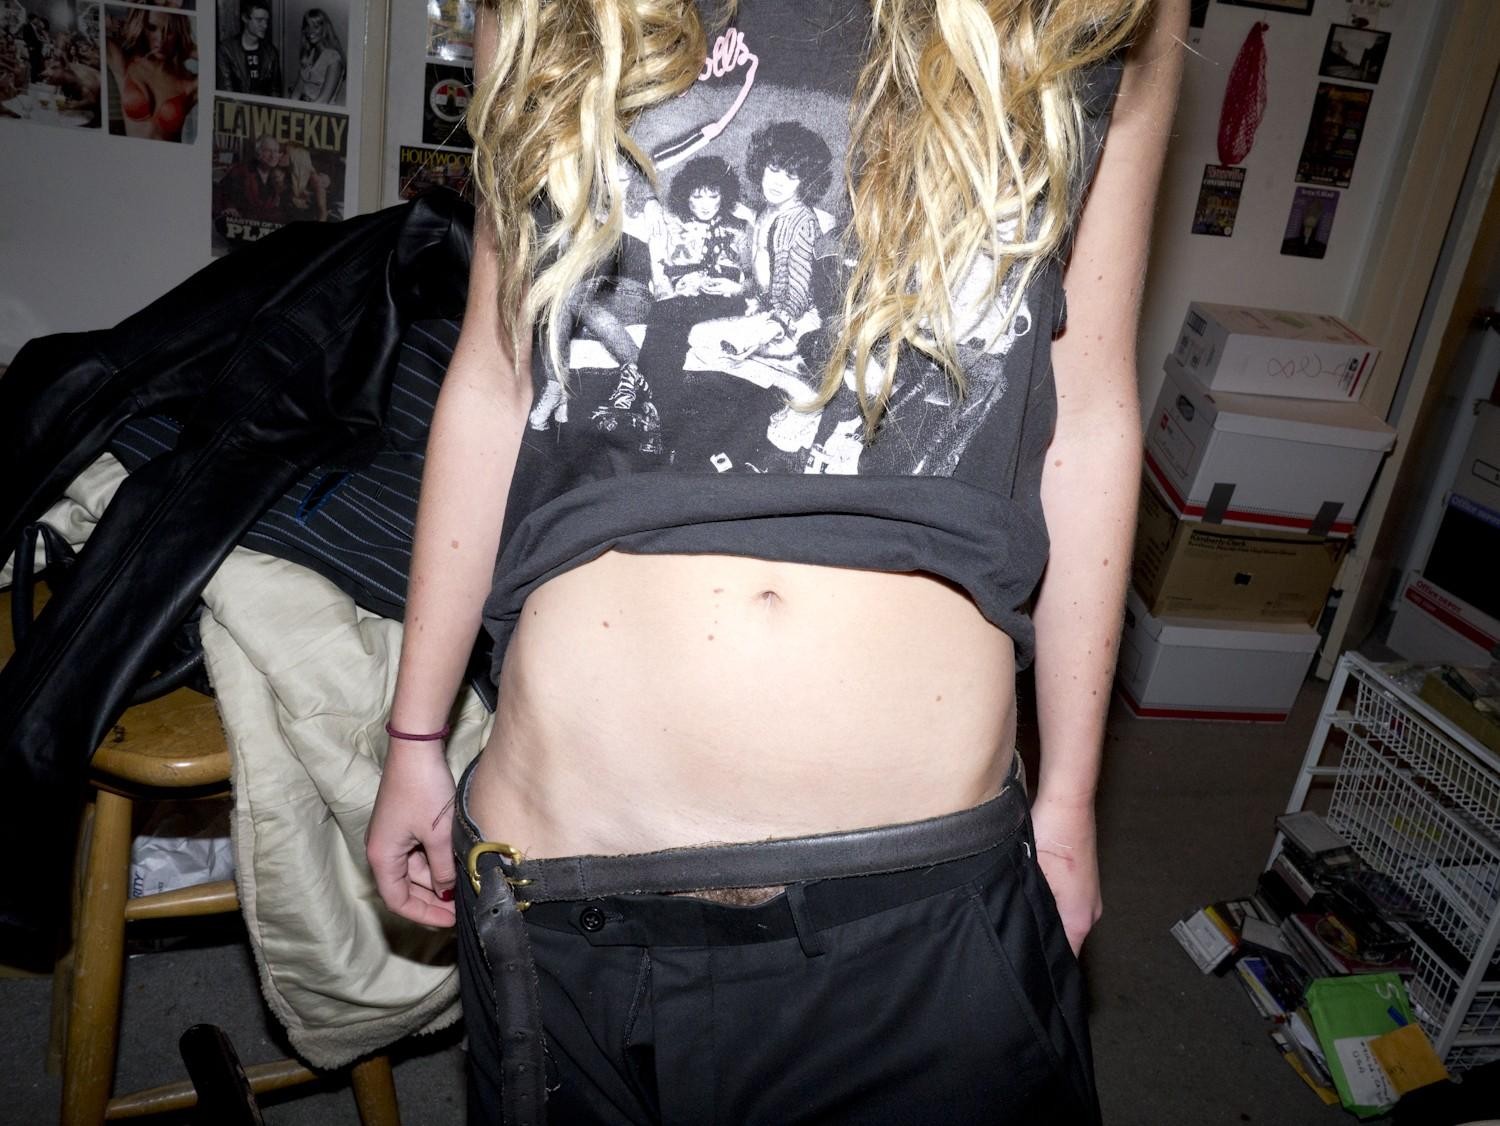 Chelsea schuchman zeigt ihre Brüste und haarige Muschi auf einem Foto von brad elterman
 #75172718